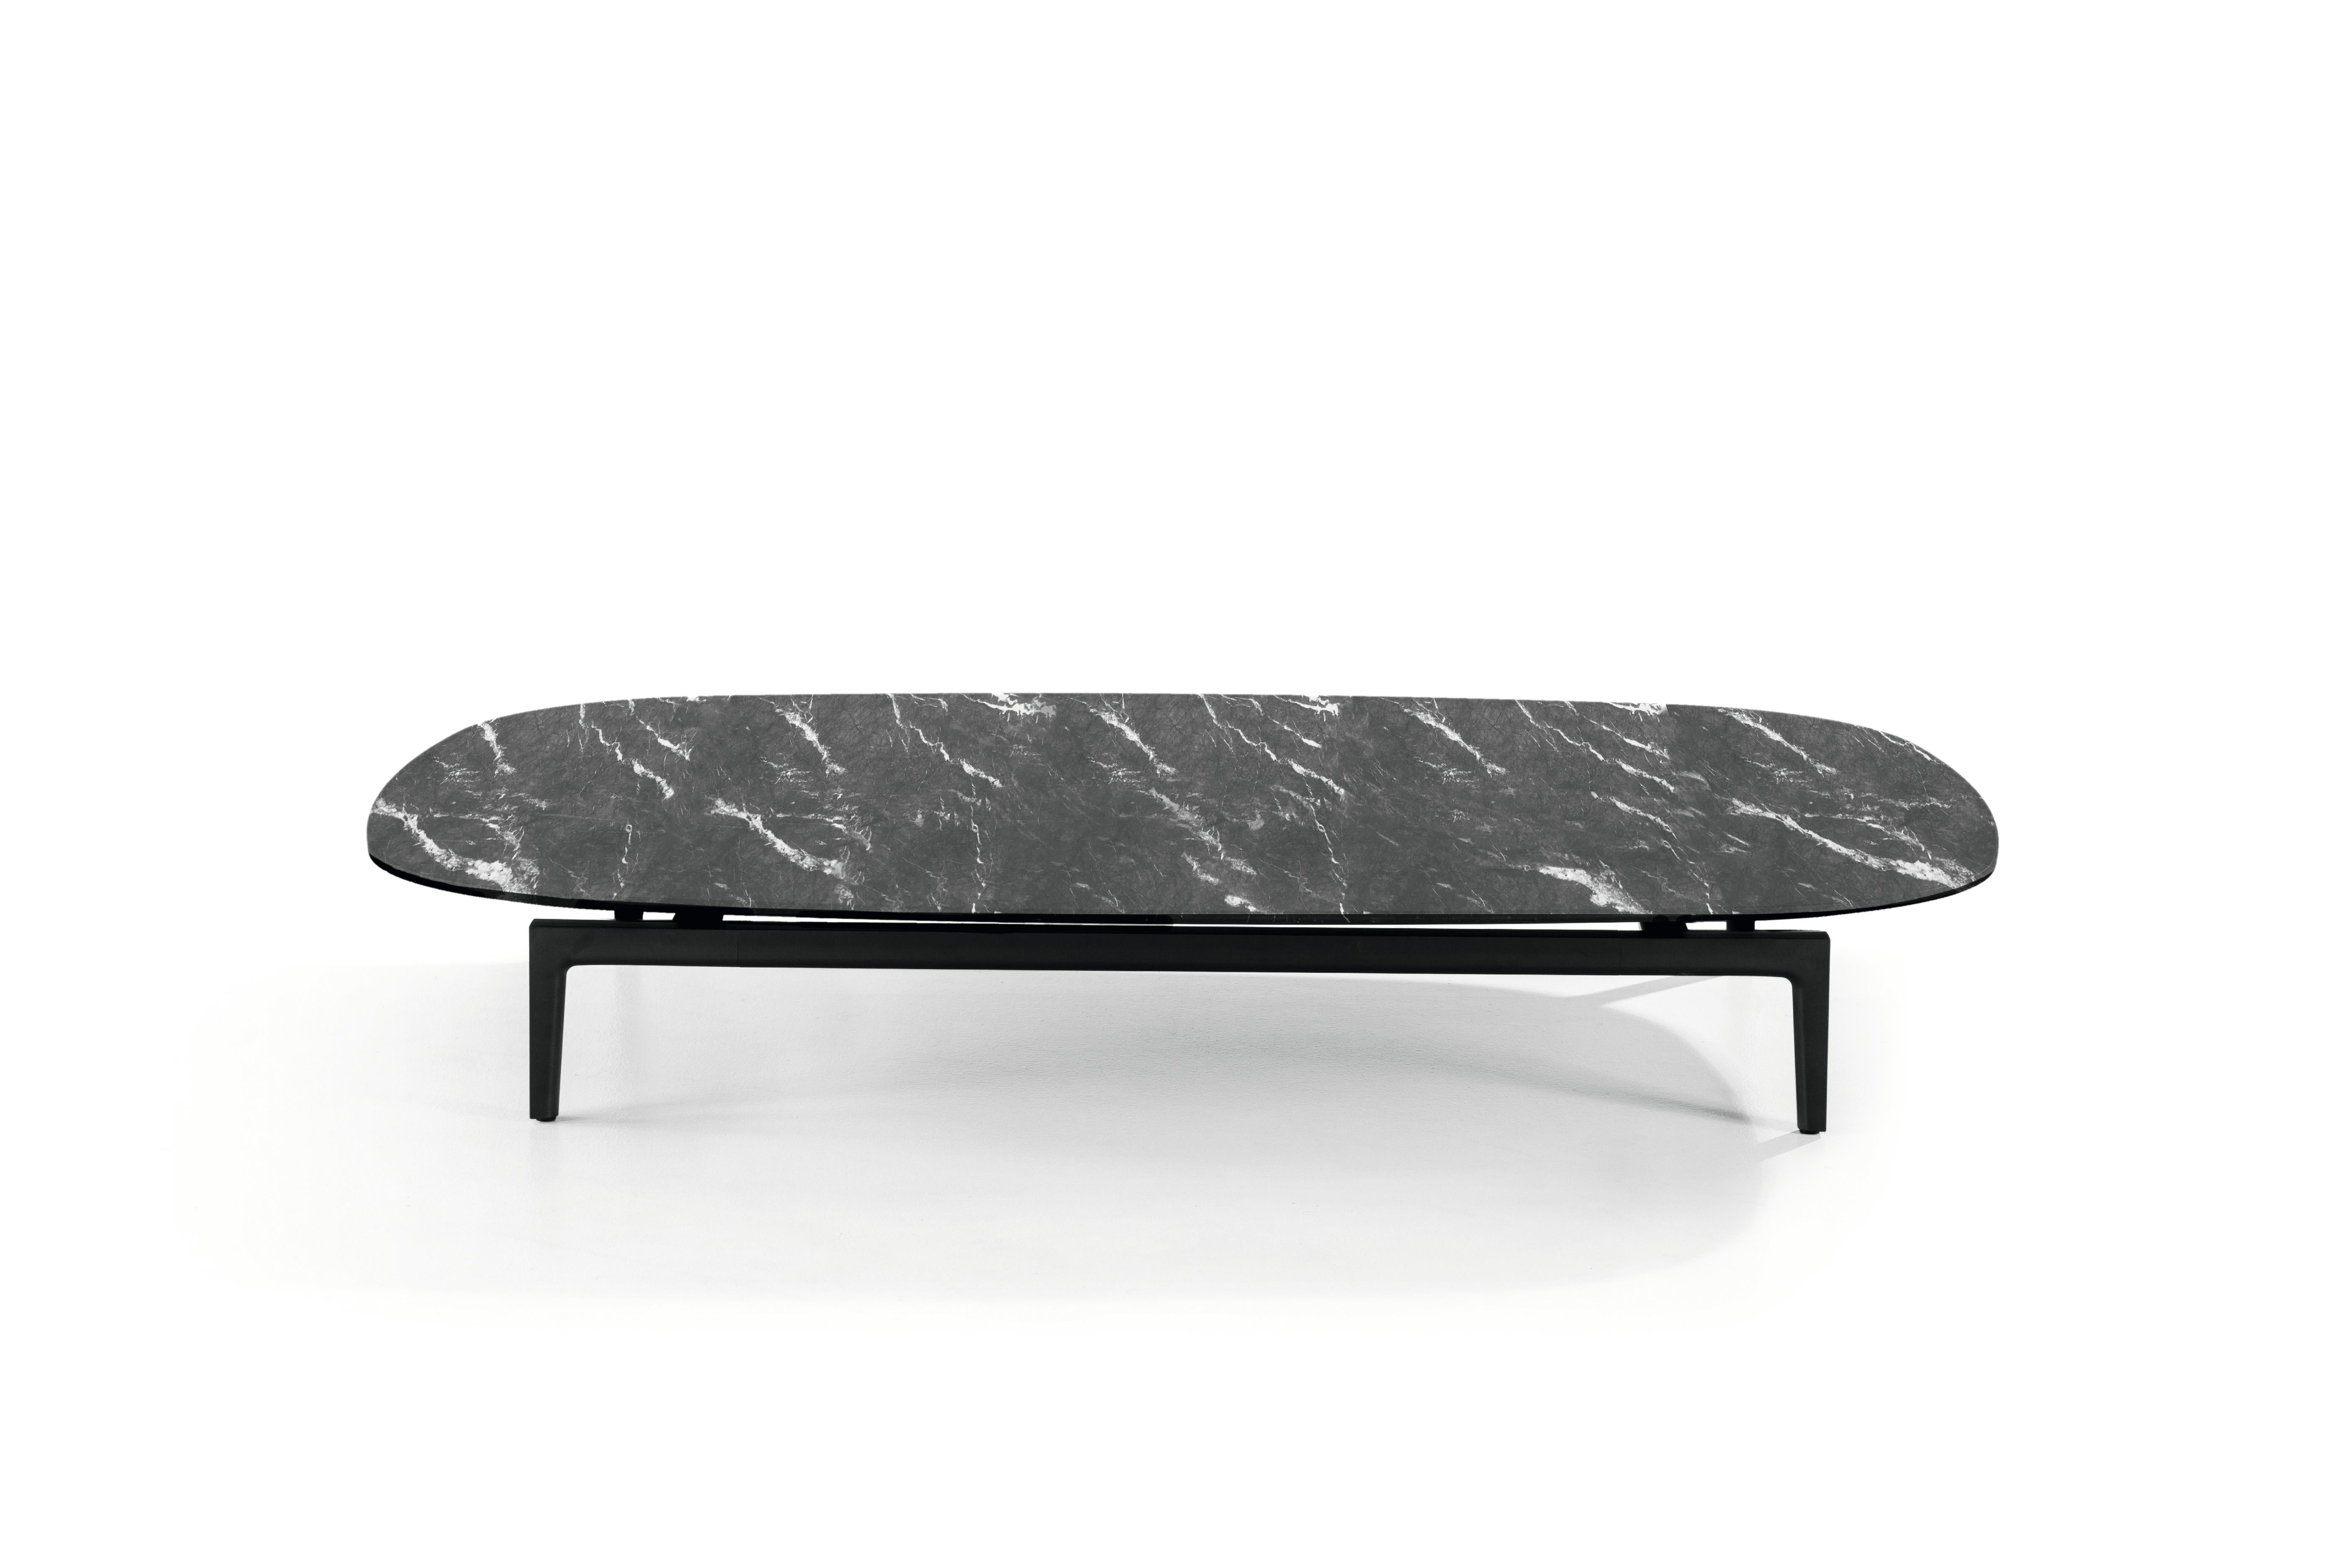 Table basse Volage Ex-S avec base en marbre et aluminium de Philippe Starck 

CONTOURS ARRONDIS
Une collection de tables basses luxueuses recouvertes de marbre de première qualité, conçues par Philippe Starck en deux tailles, avec des bords